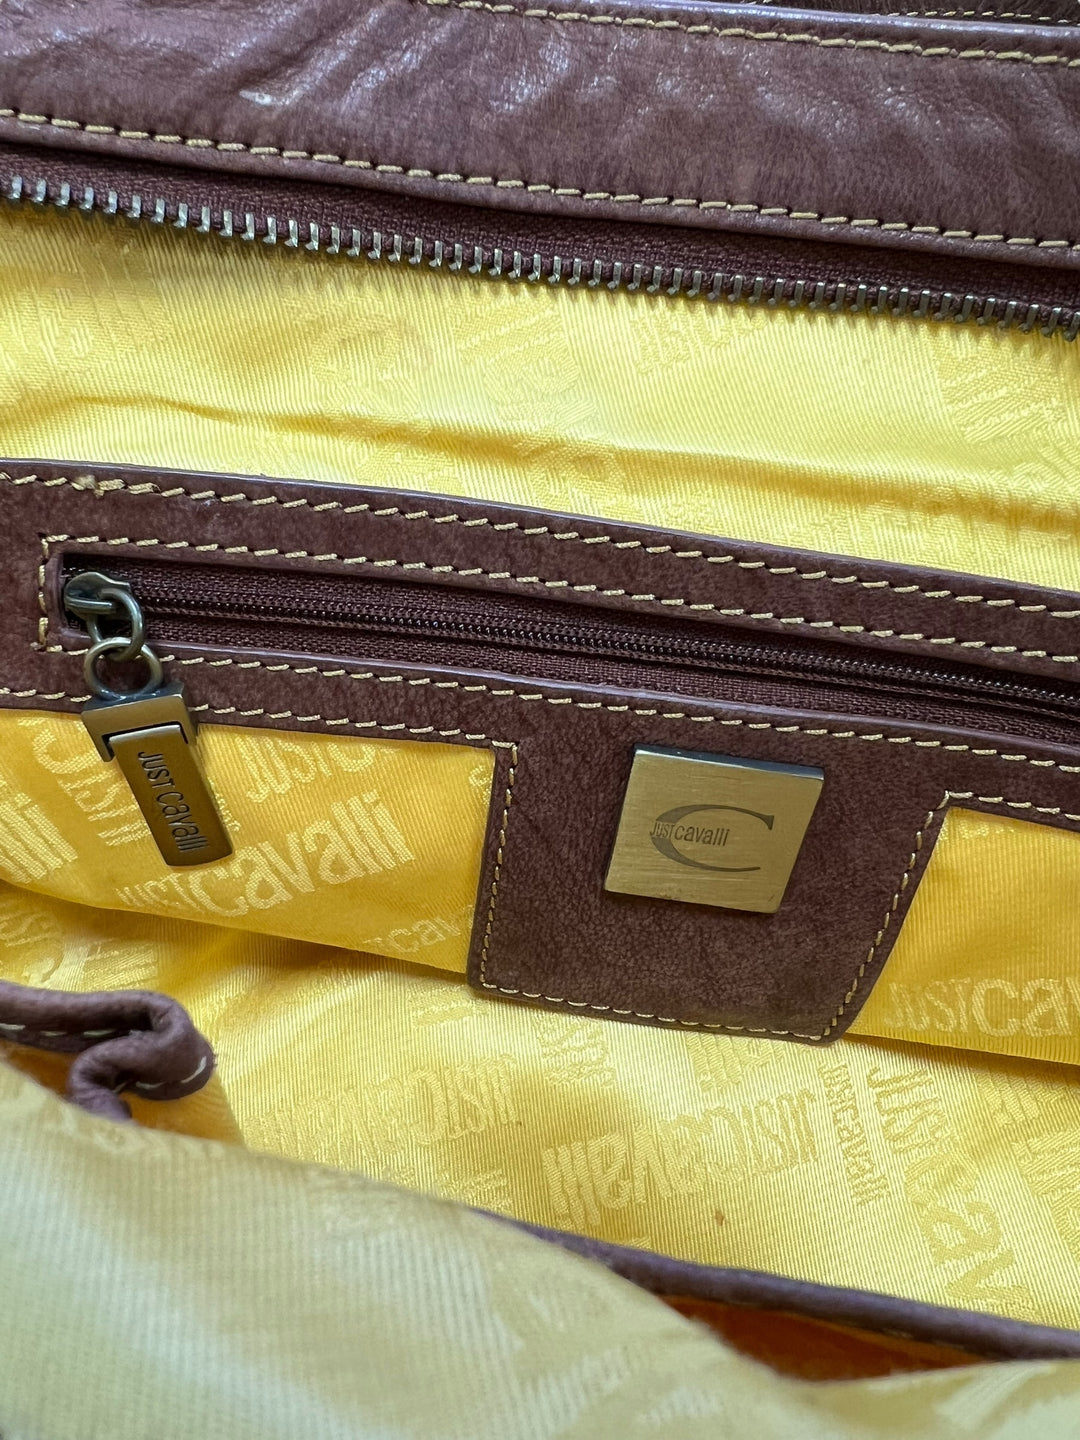 Just Cavalli vintage brown leather shoulder bag